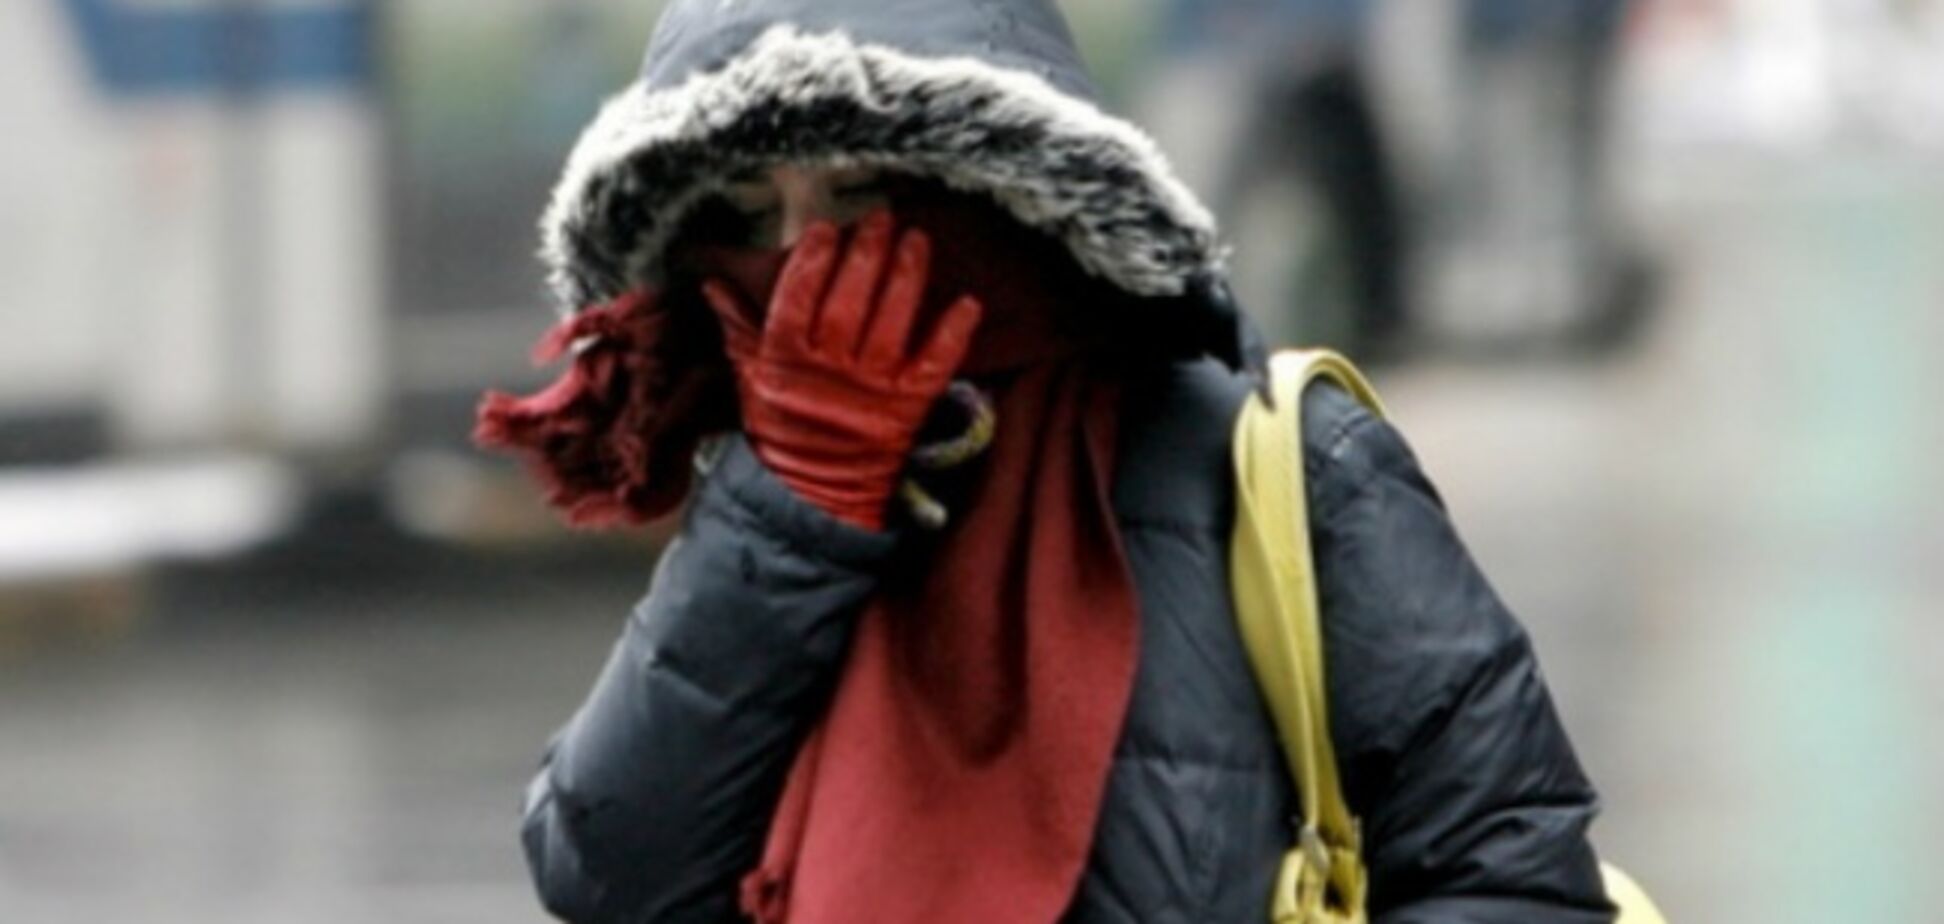 Кутайте носы: синоптик предупредила о сильных морозах в Киеве 